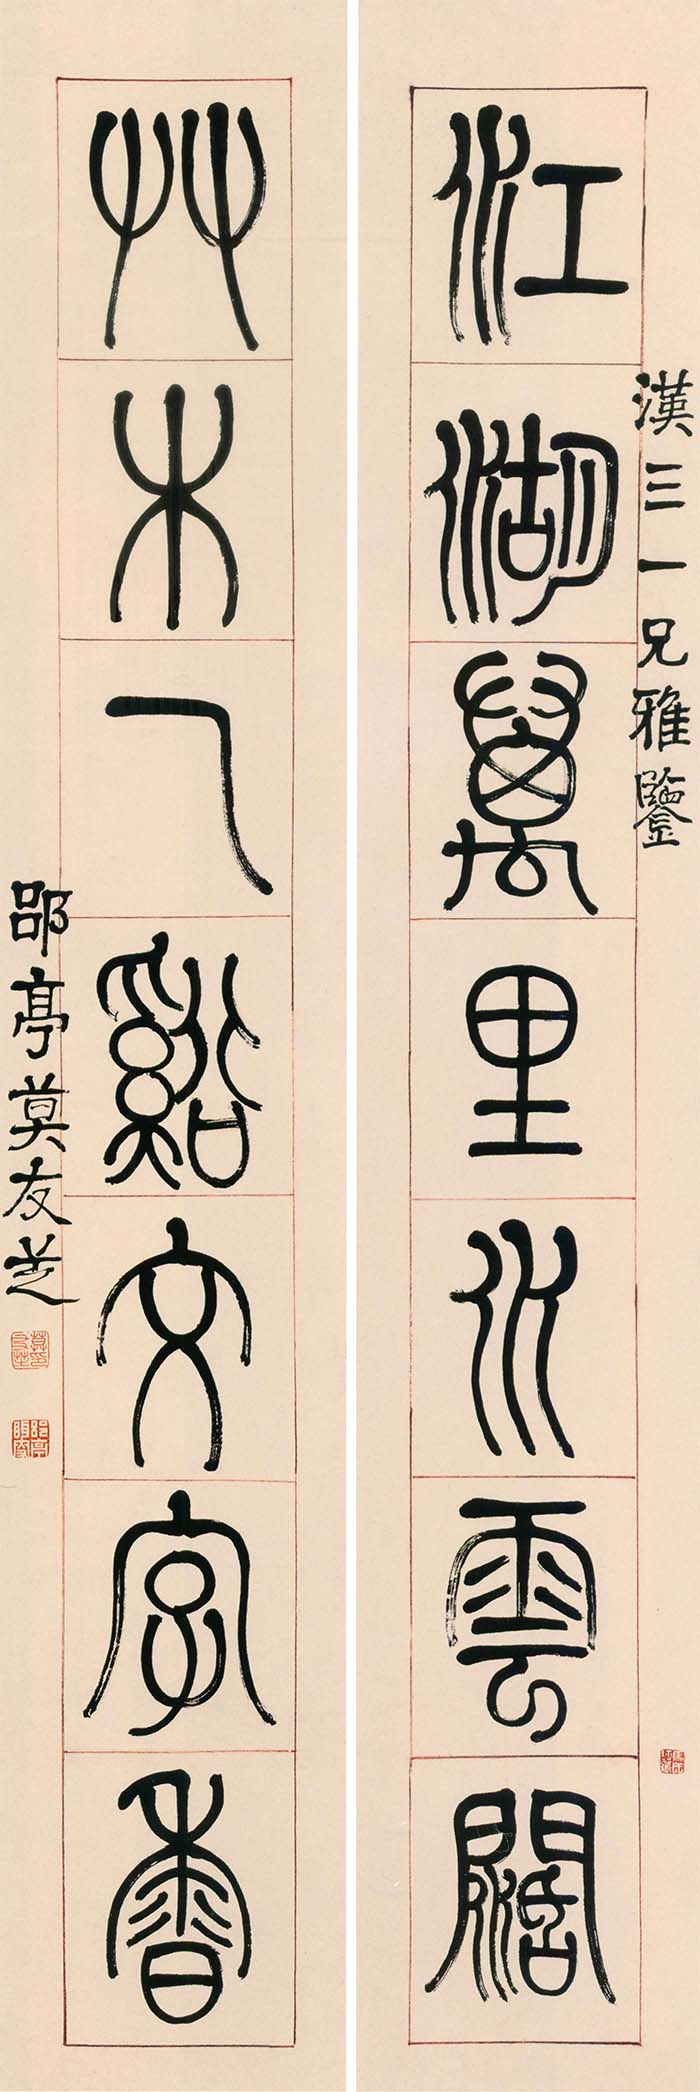 莫友芝《篆书江湖草木七言联》-贵州省博物馆藏(图1)